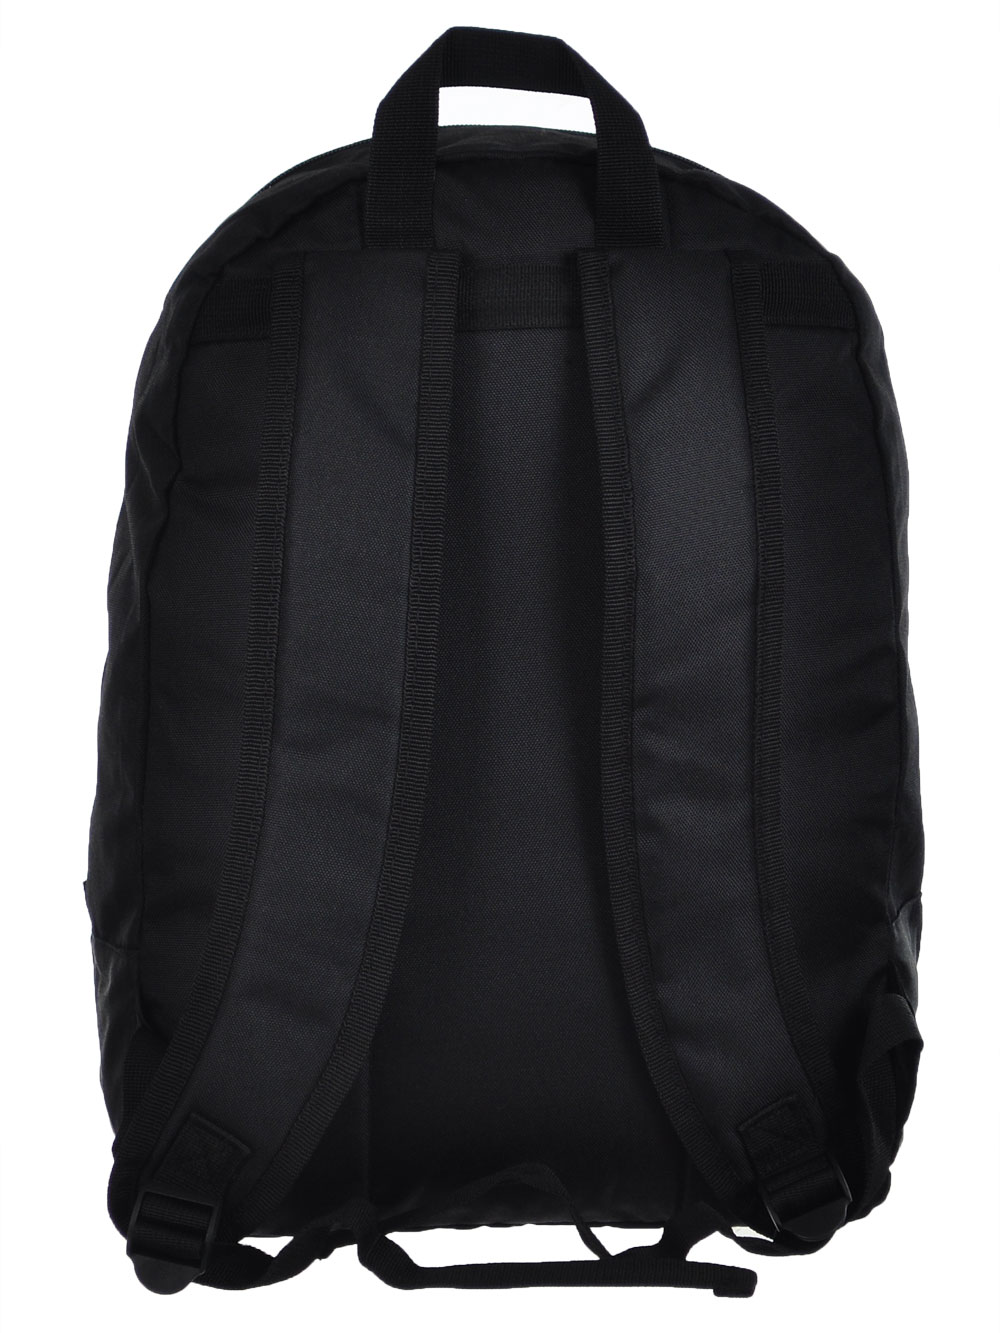 Nautica Backpack | eBay